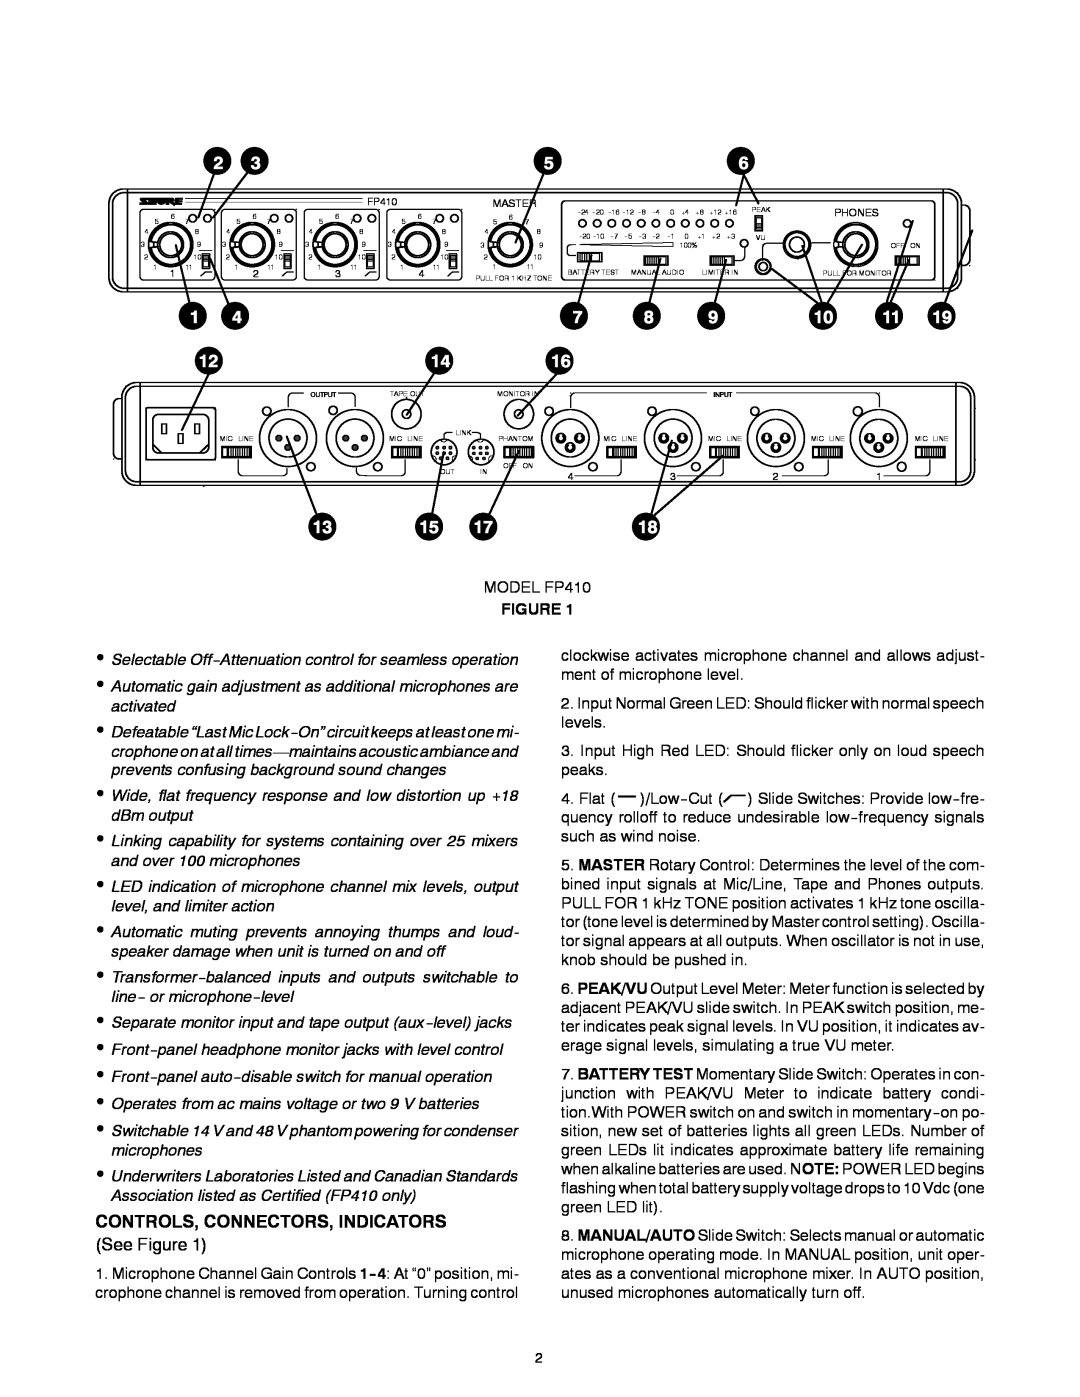 Shure FP410 manual Controls, Connectors, Indicators, See Figure 